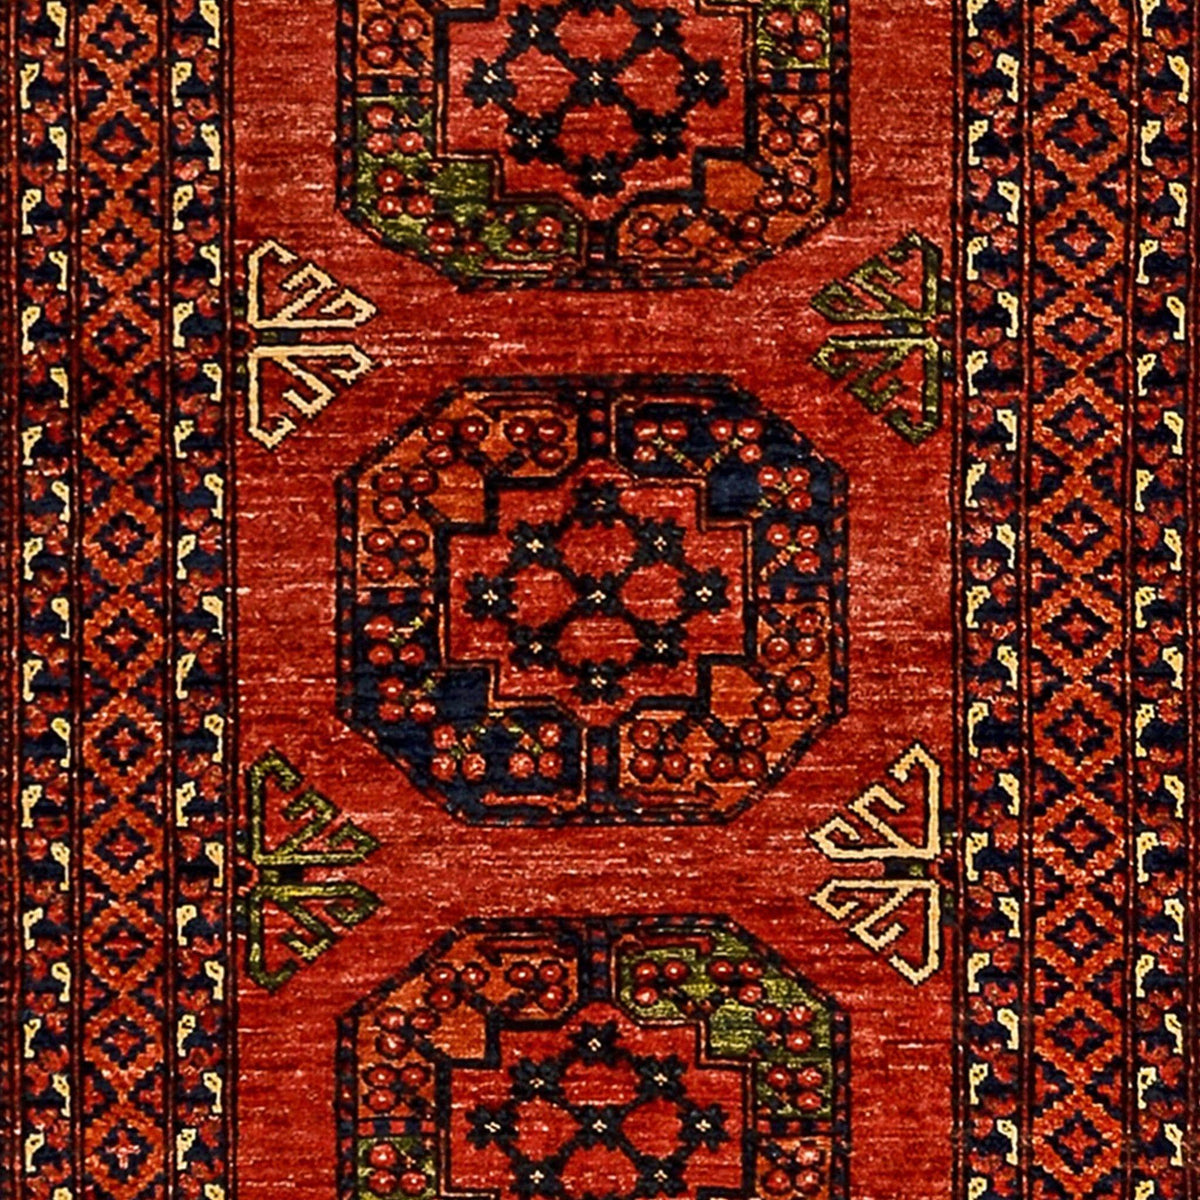 Fine Hand-knotted Turkmen Wool Runner 85cm x 295cm